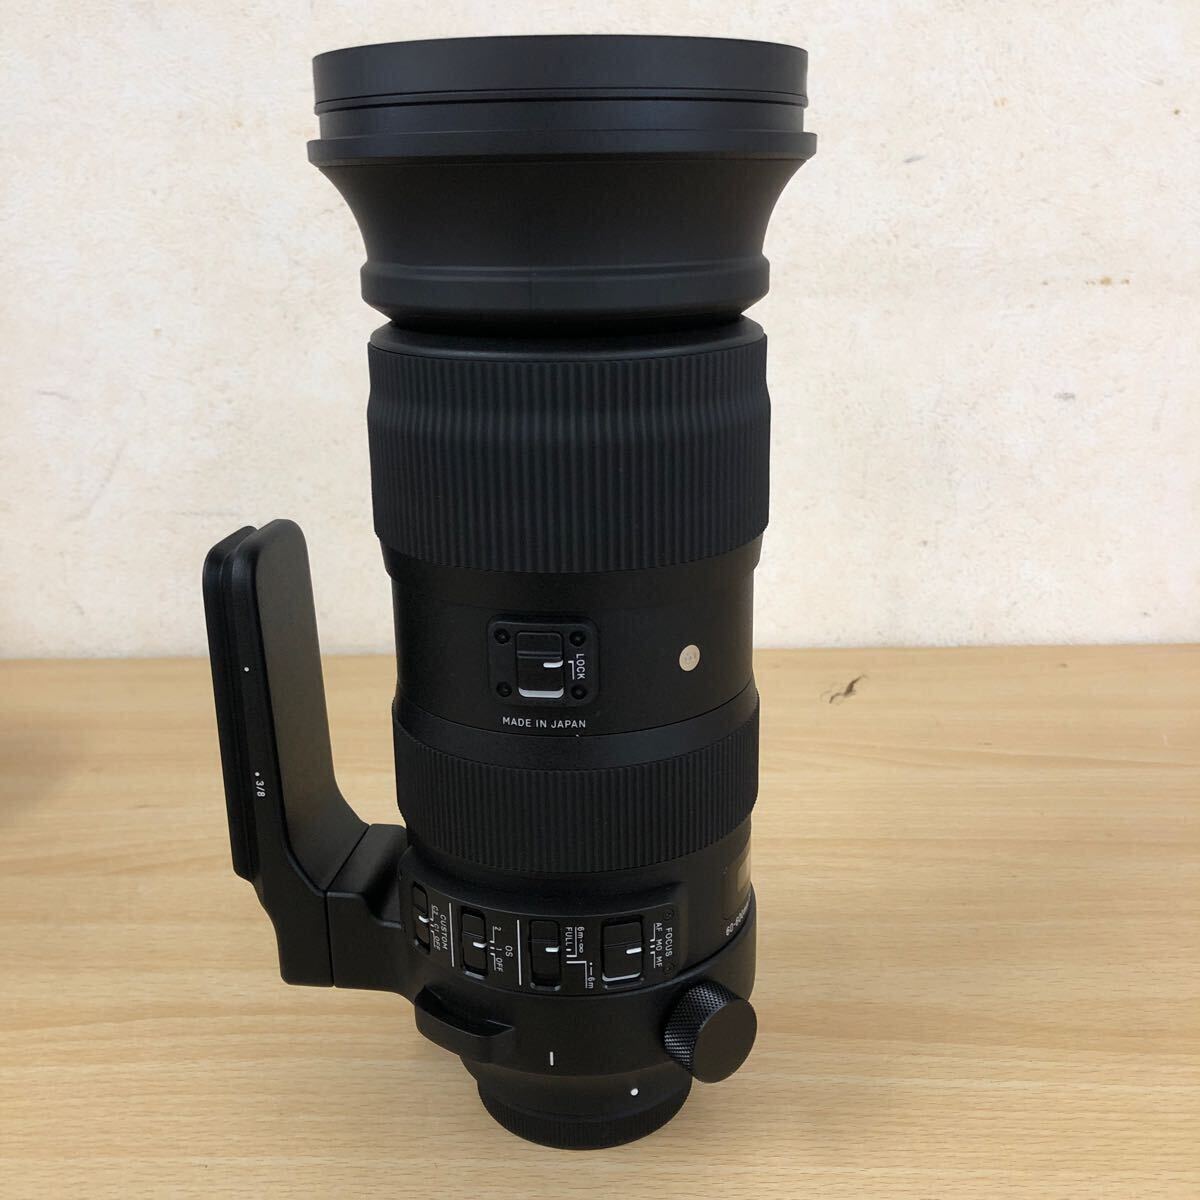 美品 シグマ SIGMA 60-600mm F4.5-6.3 DG OS ミラーレス専用高倍率超望遠ズームレンズ キヤノンマウント用 レンズ・カメラ関連の画像5